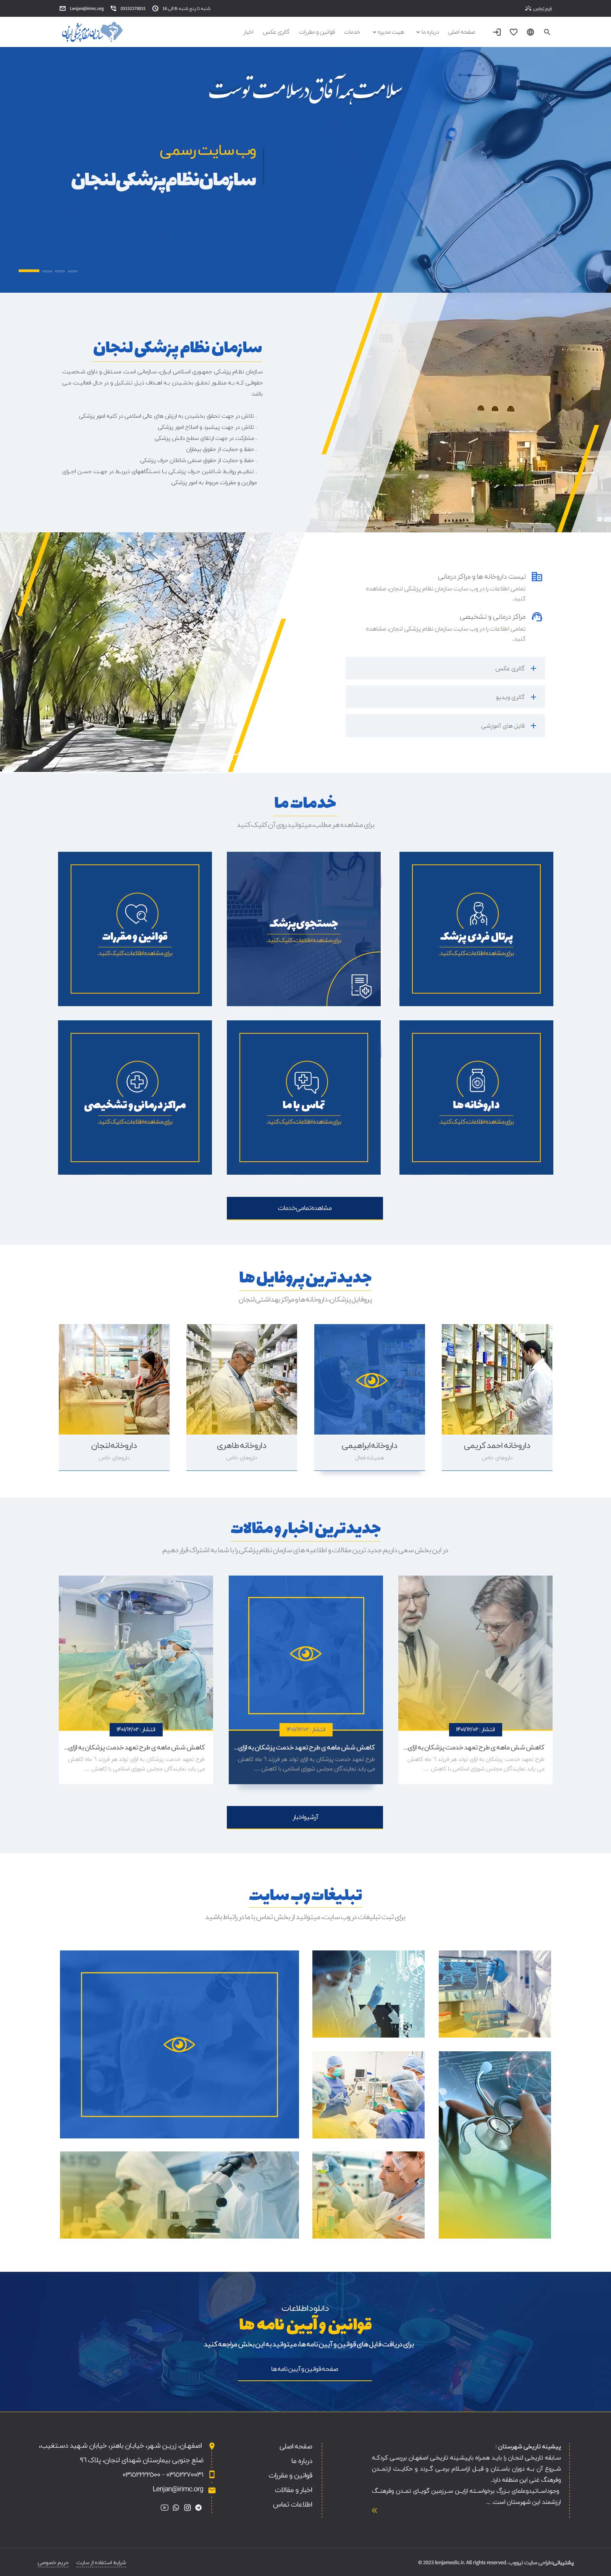 وب سایت رسمی سازمان نظام پزشکی شهرستان لنجان